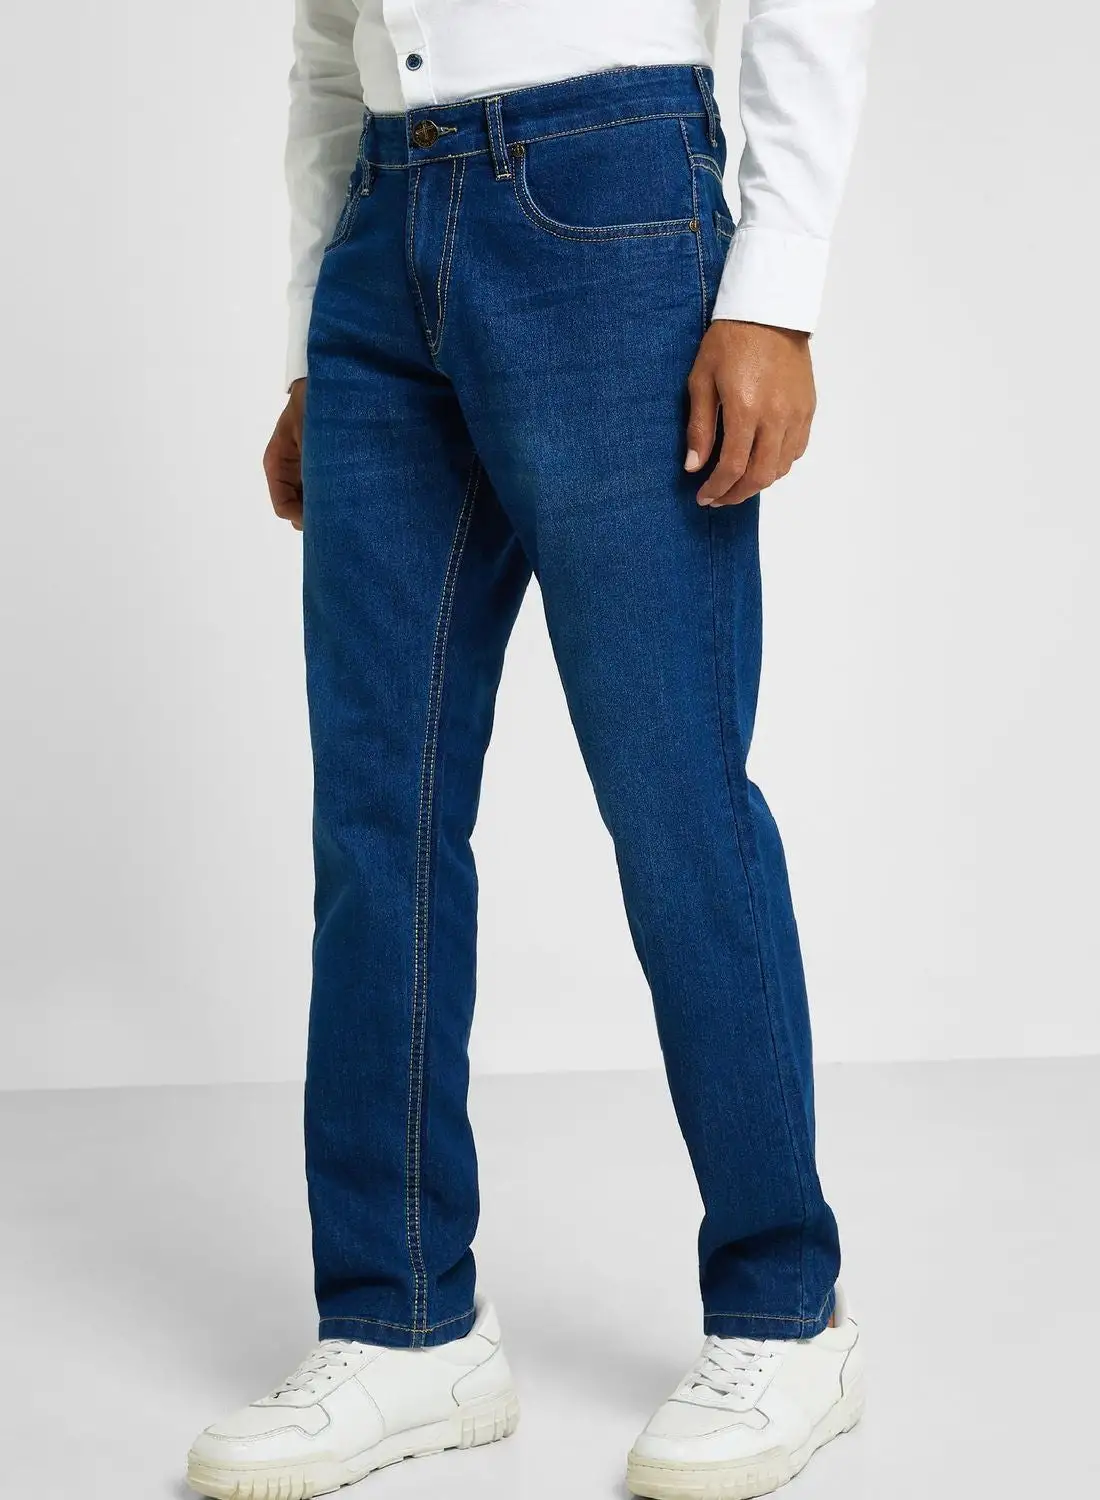 توماس سكوت توماس سكوت بنطال جينز رجالي متوسط ​​الارتفاع كلاسيكي خفيف اللون وقابل للتمدد